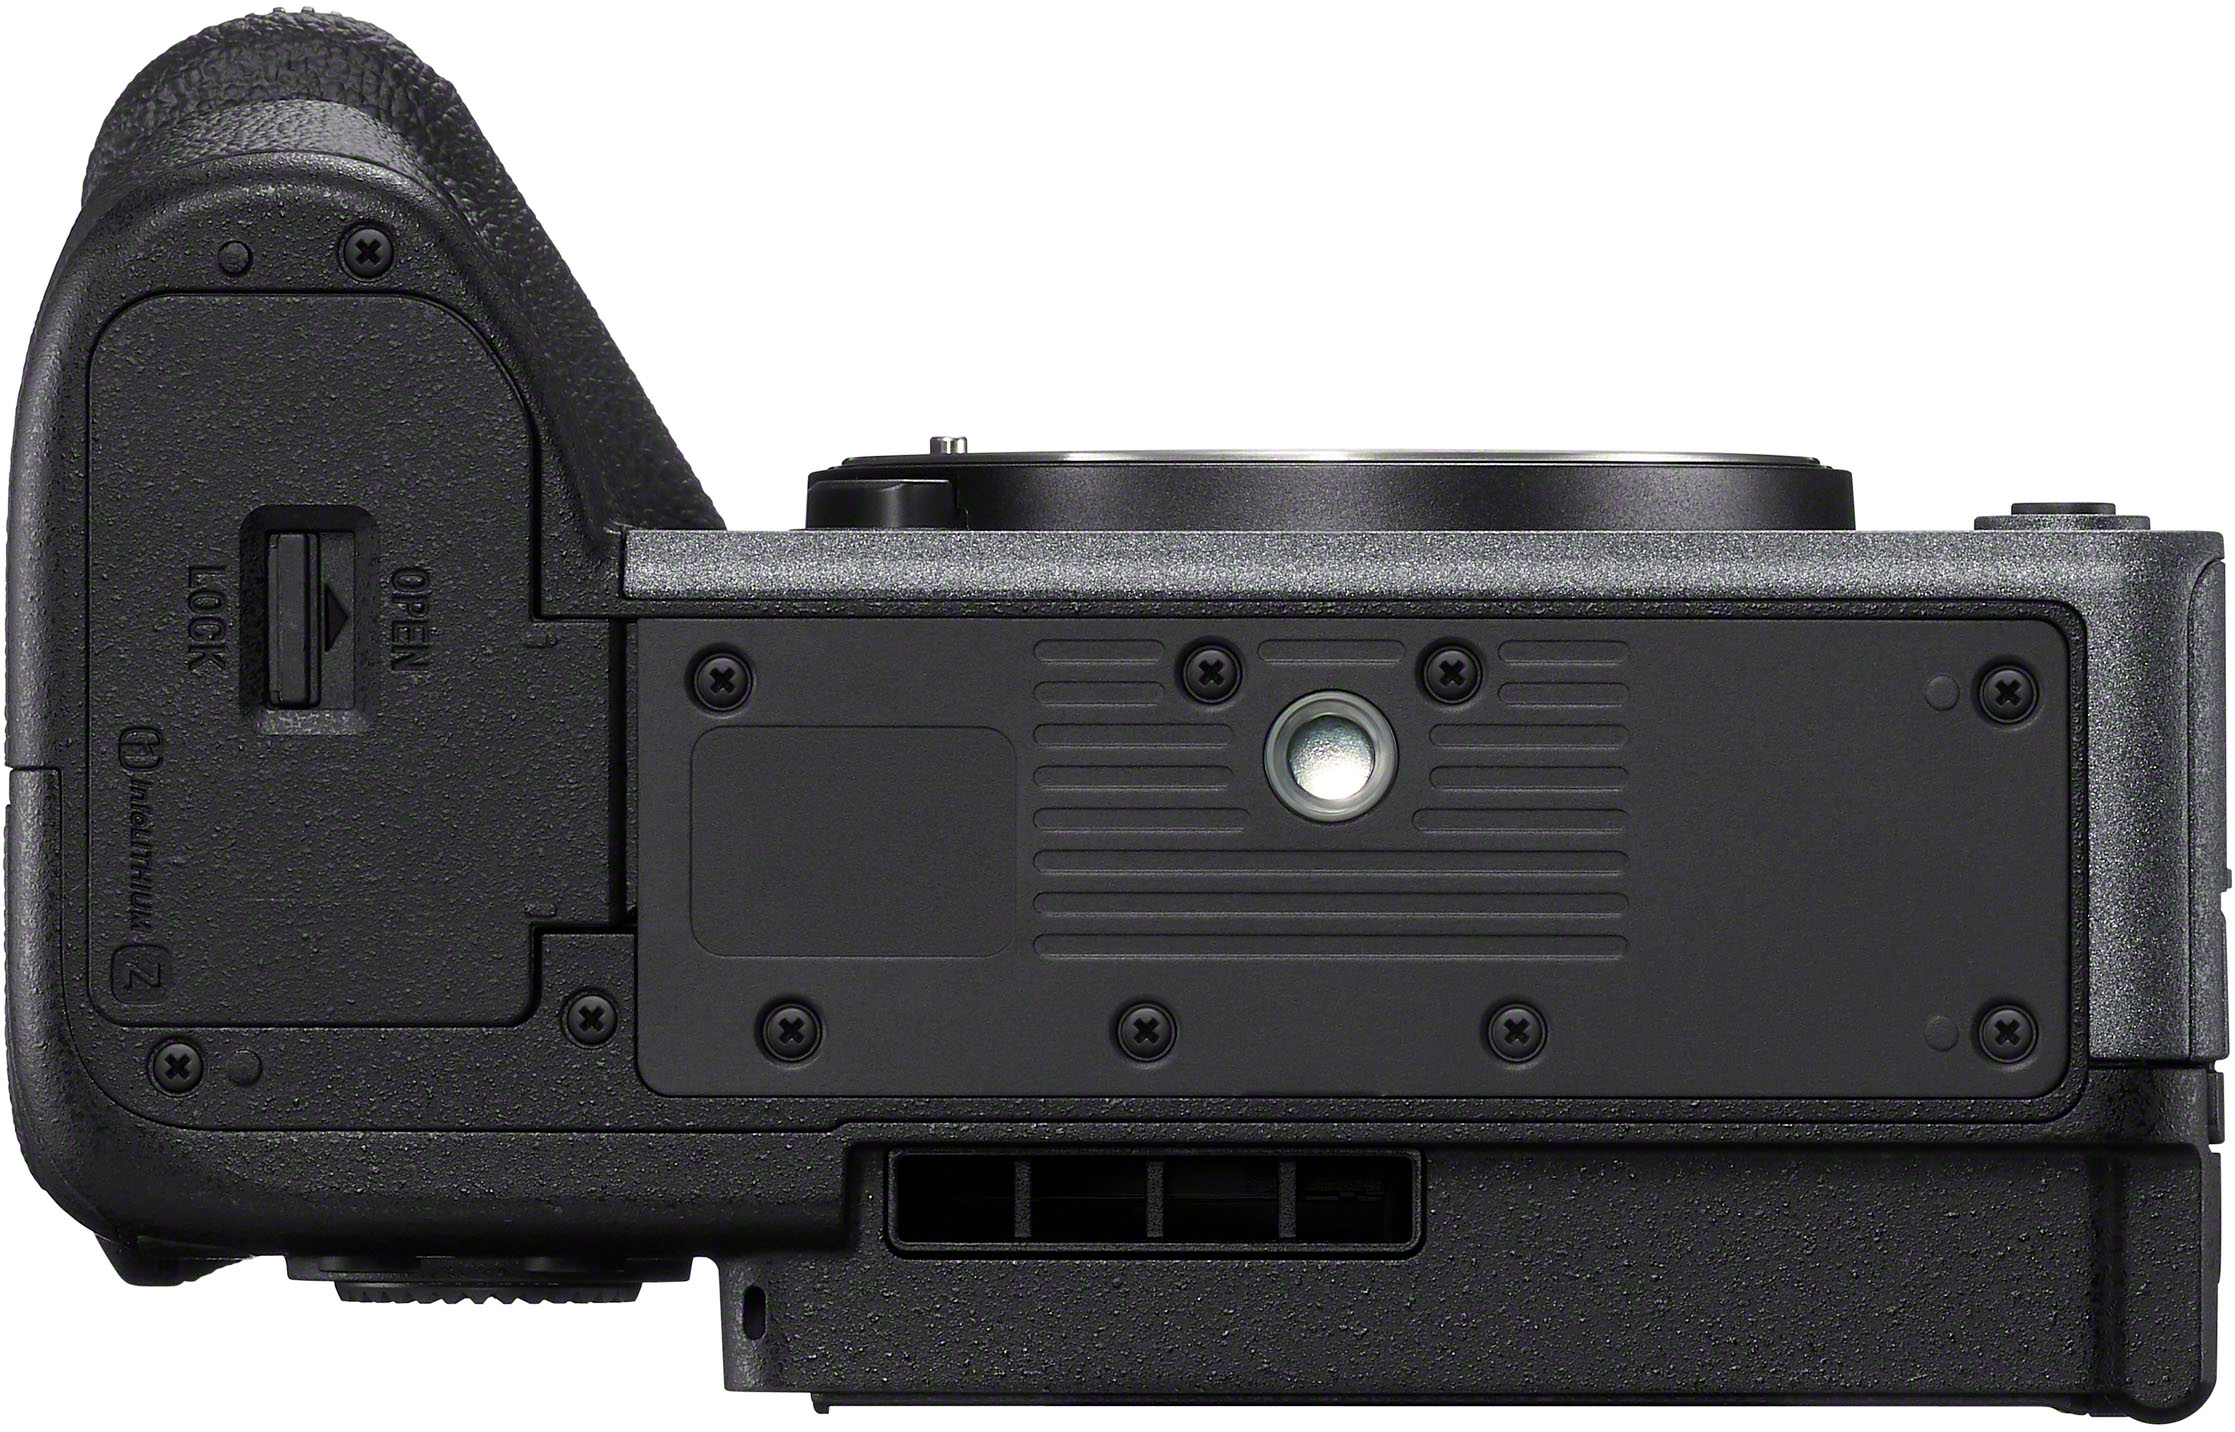 Sony FX30 Digital Cinema Camera – Clasicos Hub